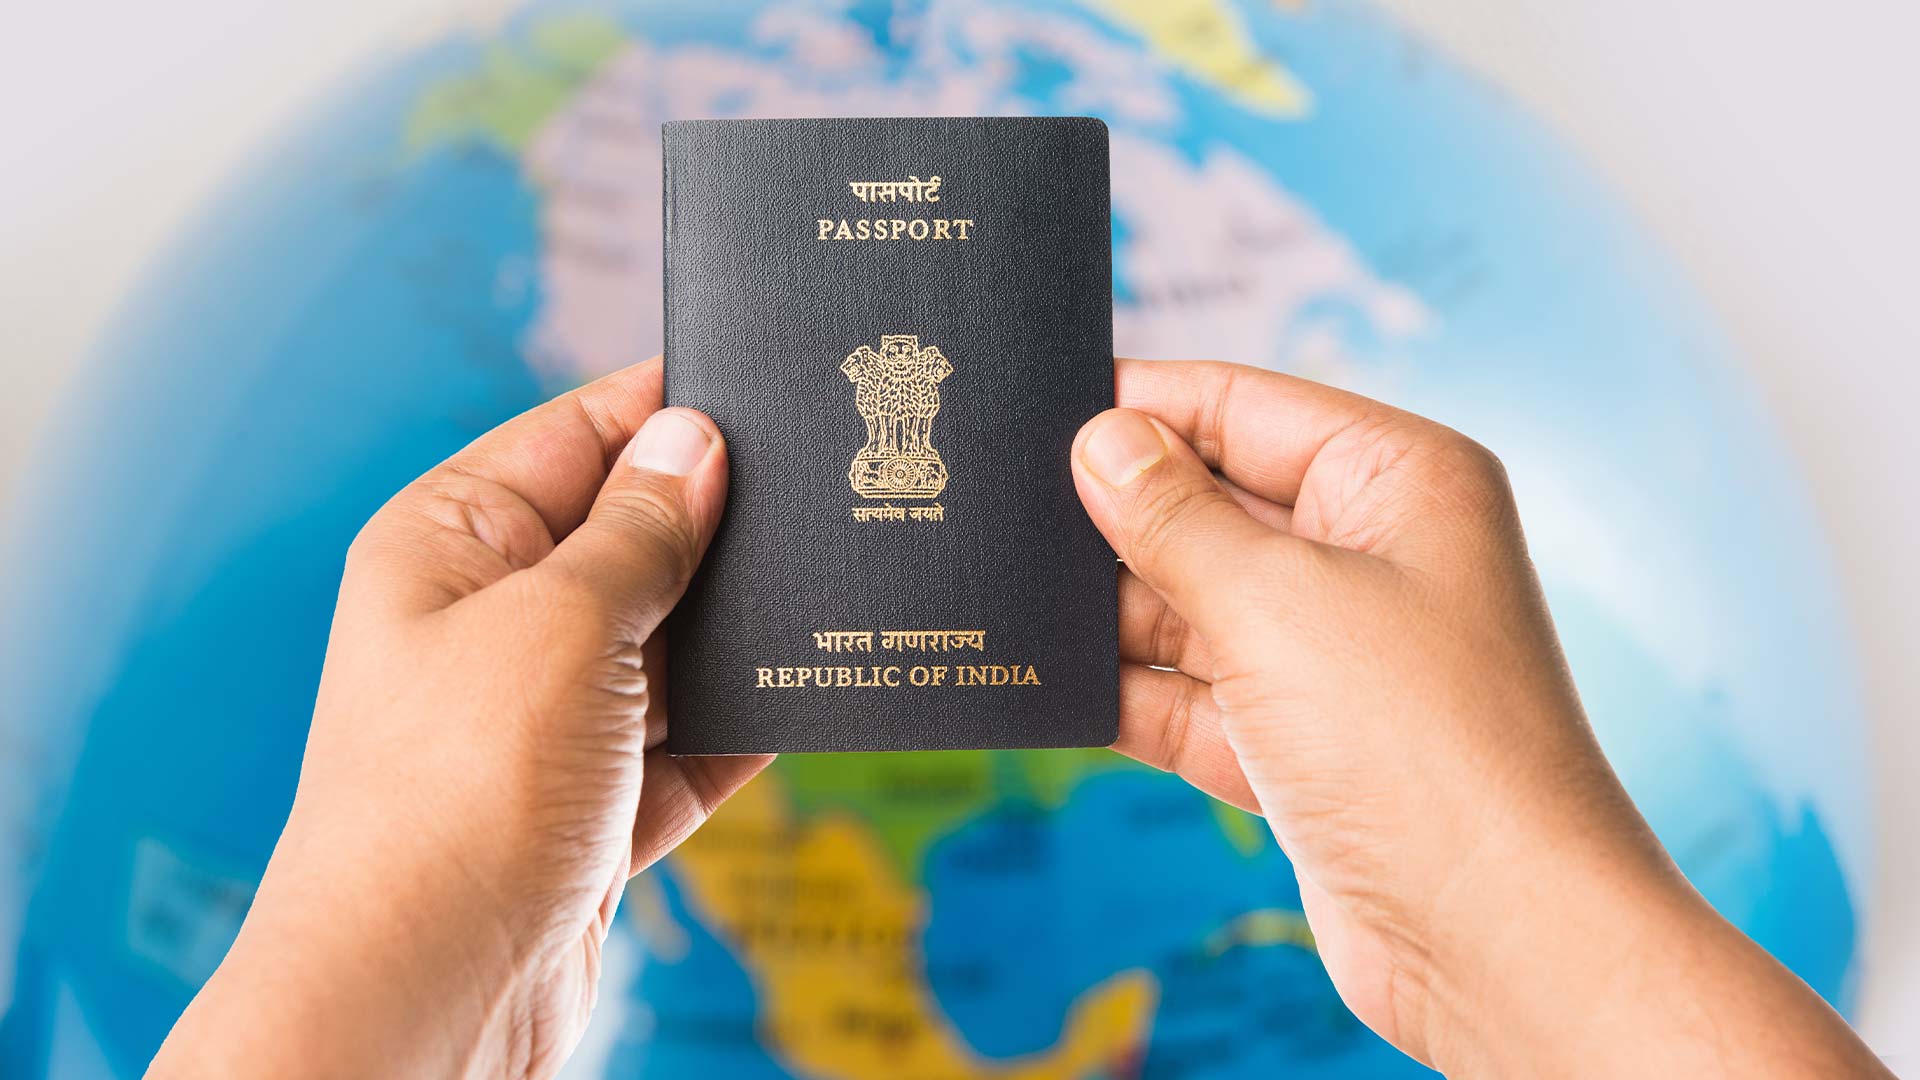 Báo cáo với các cơ quan chức năng để xác nhận việc mất hộ chiếu.